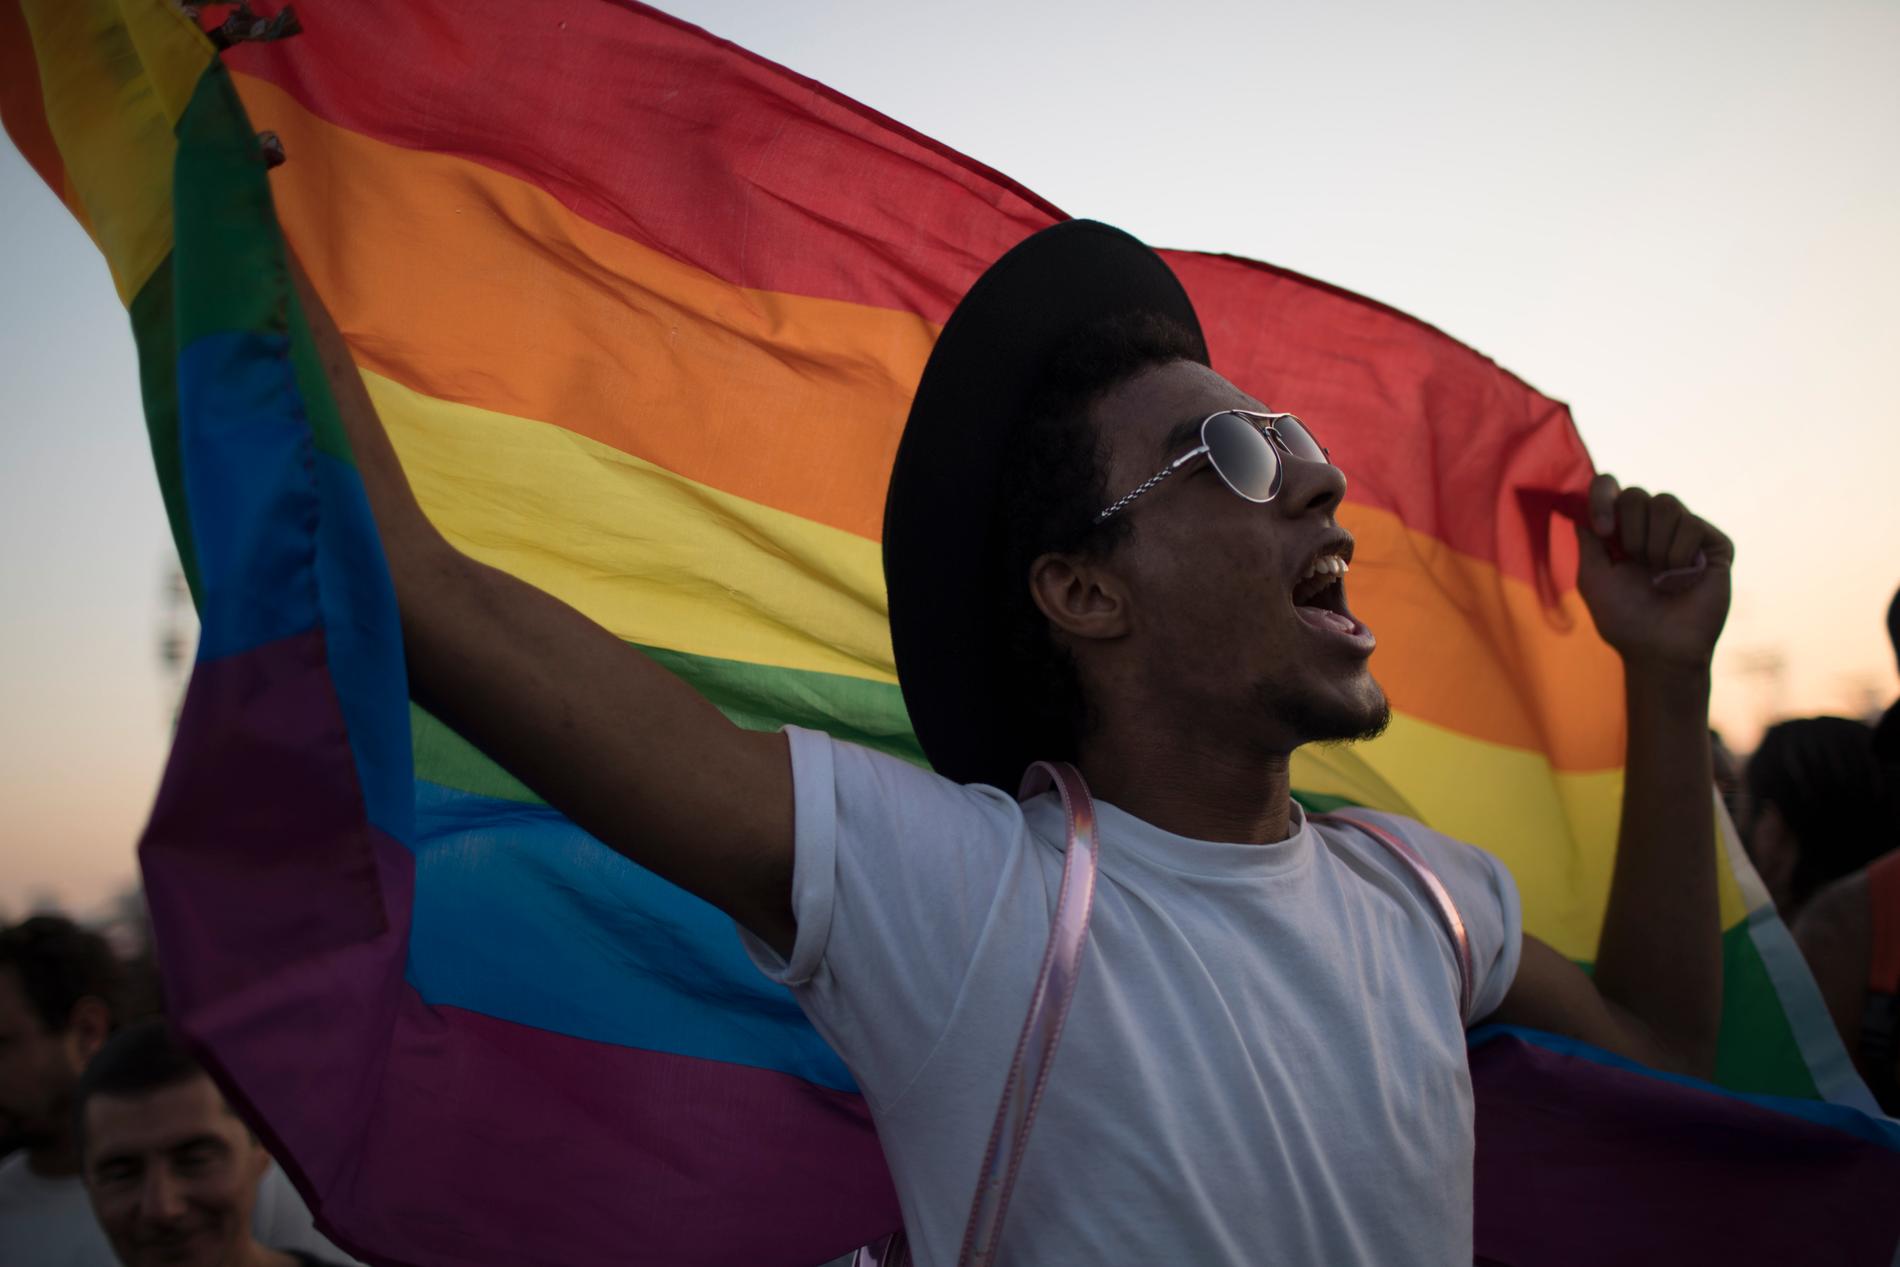 Efter 20 års kamp har högsta domstolen röstat för ett ökat skydd för hbtq-personer. Bilden är tagen på en pridefestival i Rio de Janeiro 2017. Arkivbild.